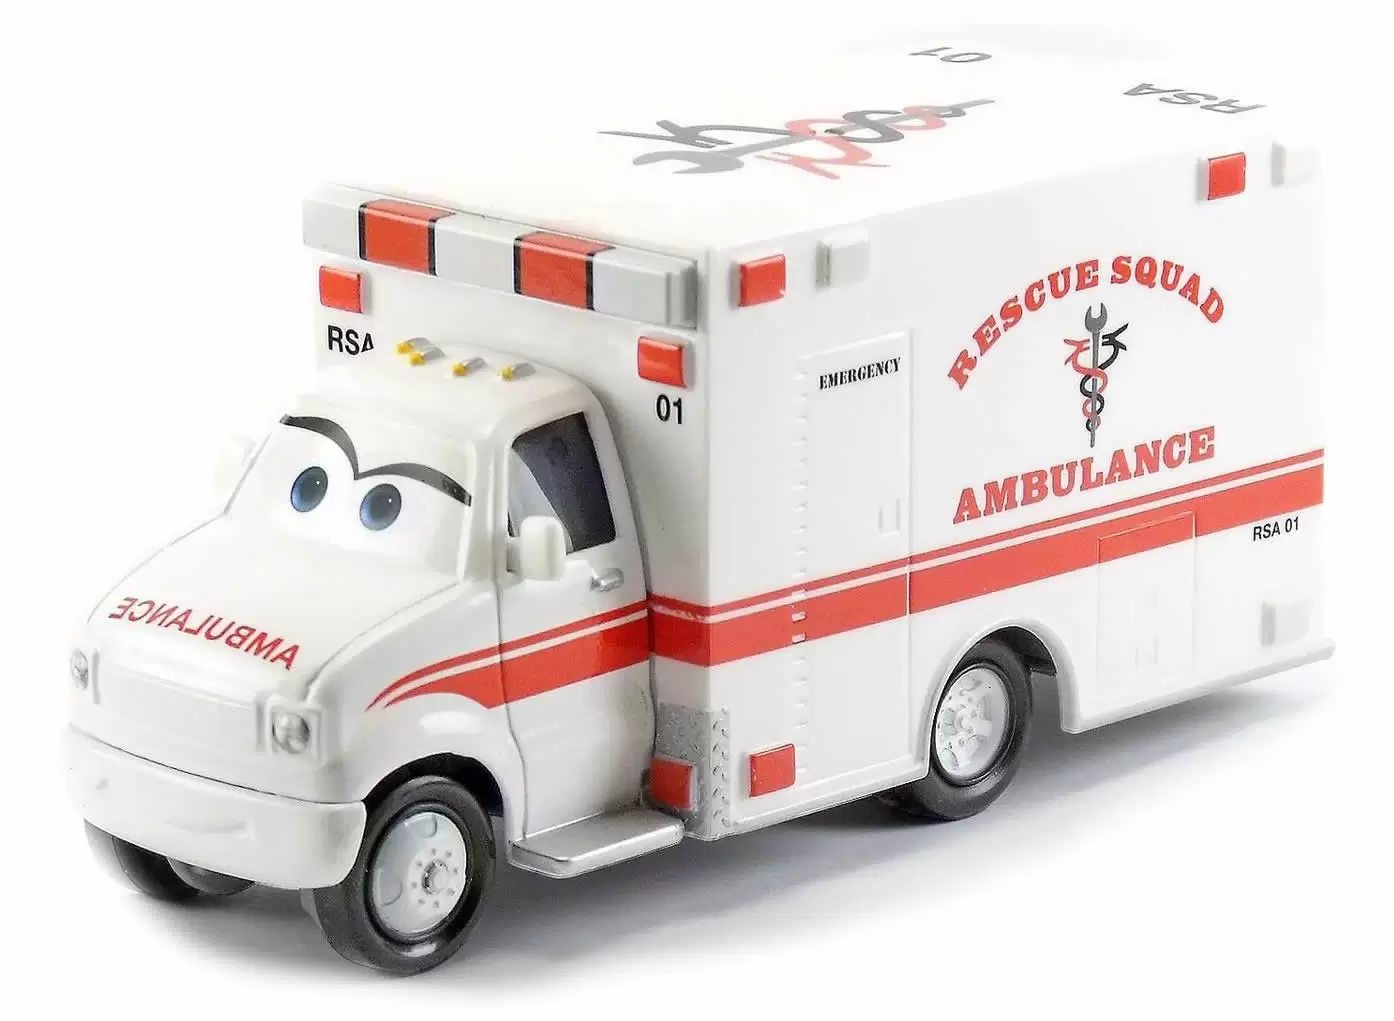 Cars Toon - Rescue Squad Ambulance